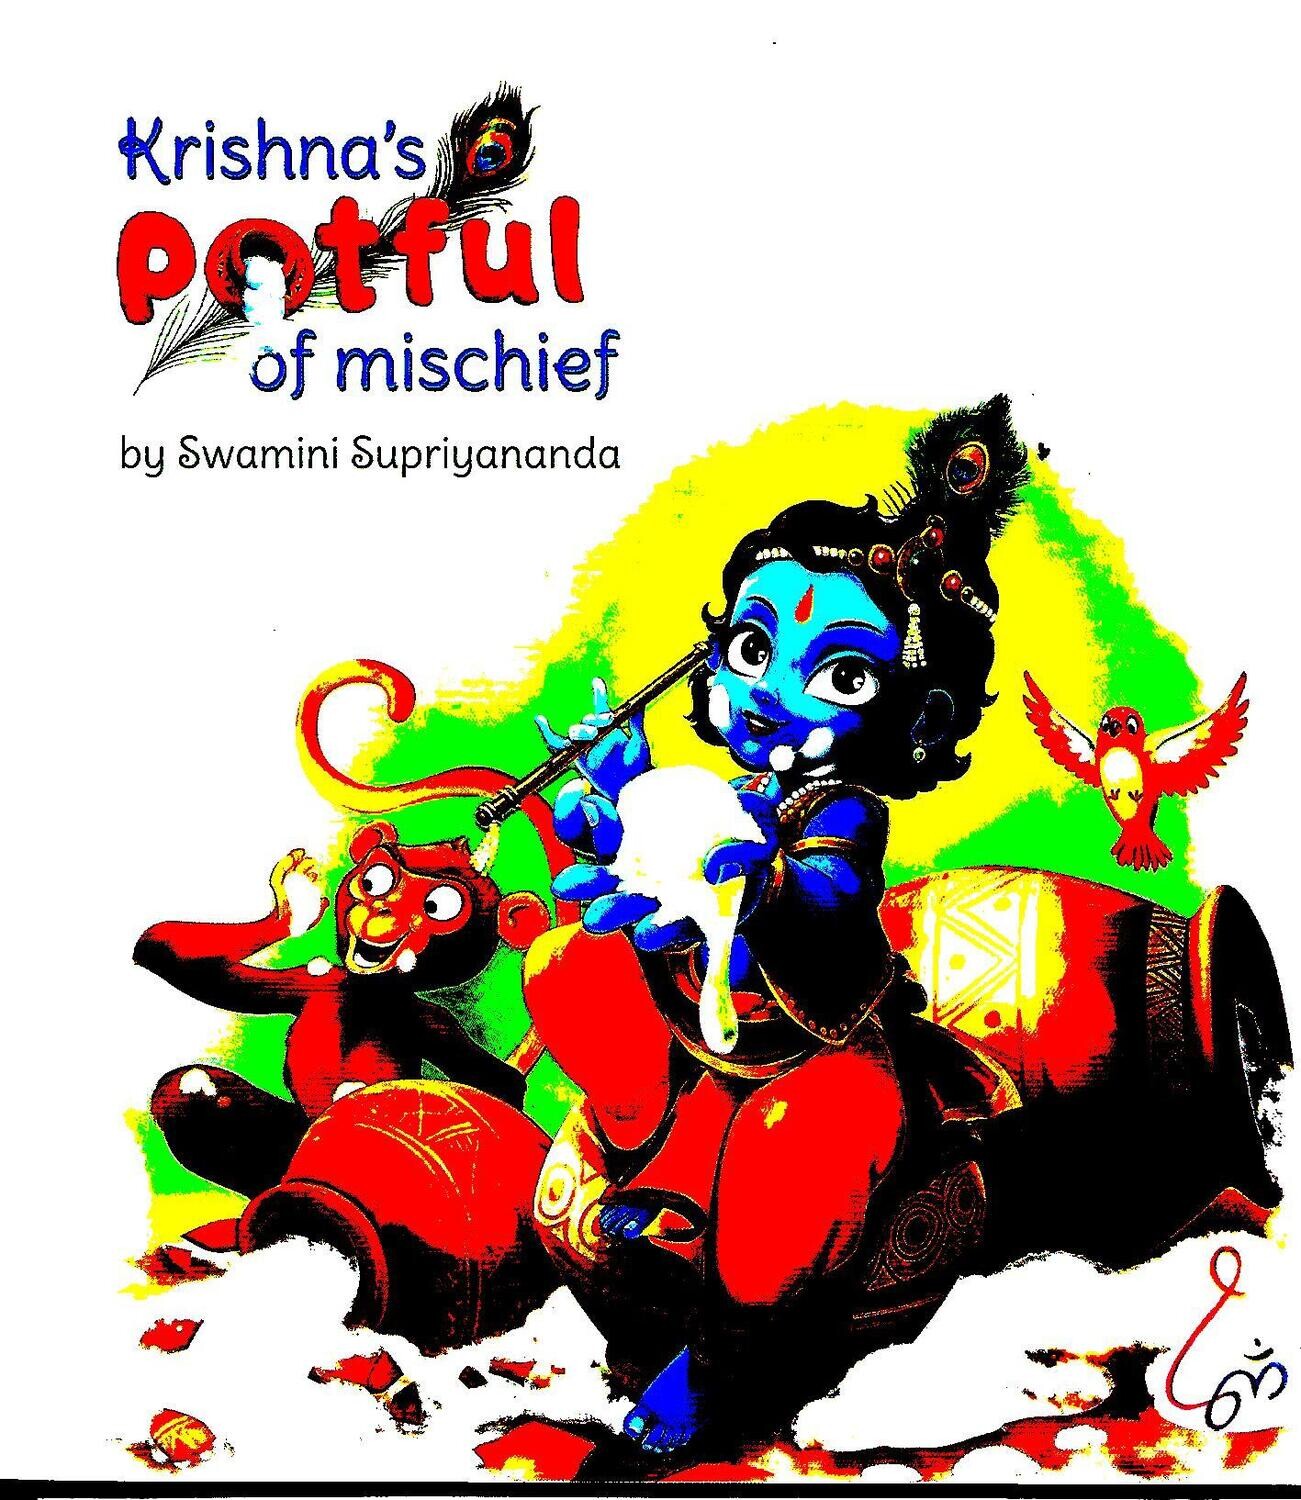 Krishna's potful of mischief